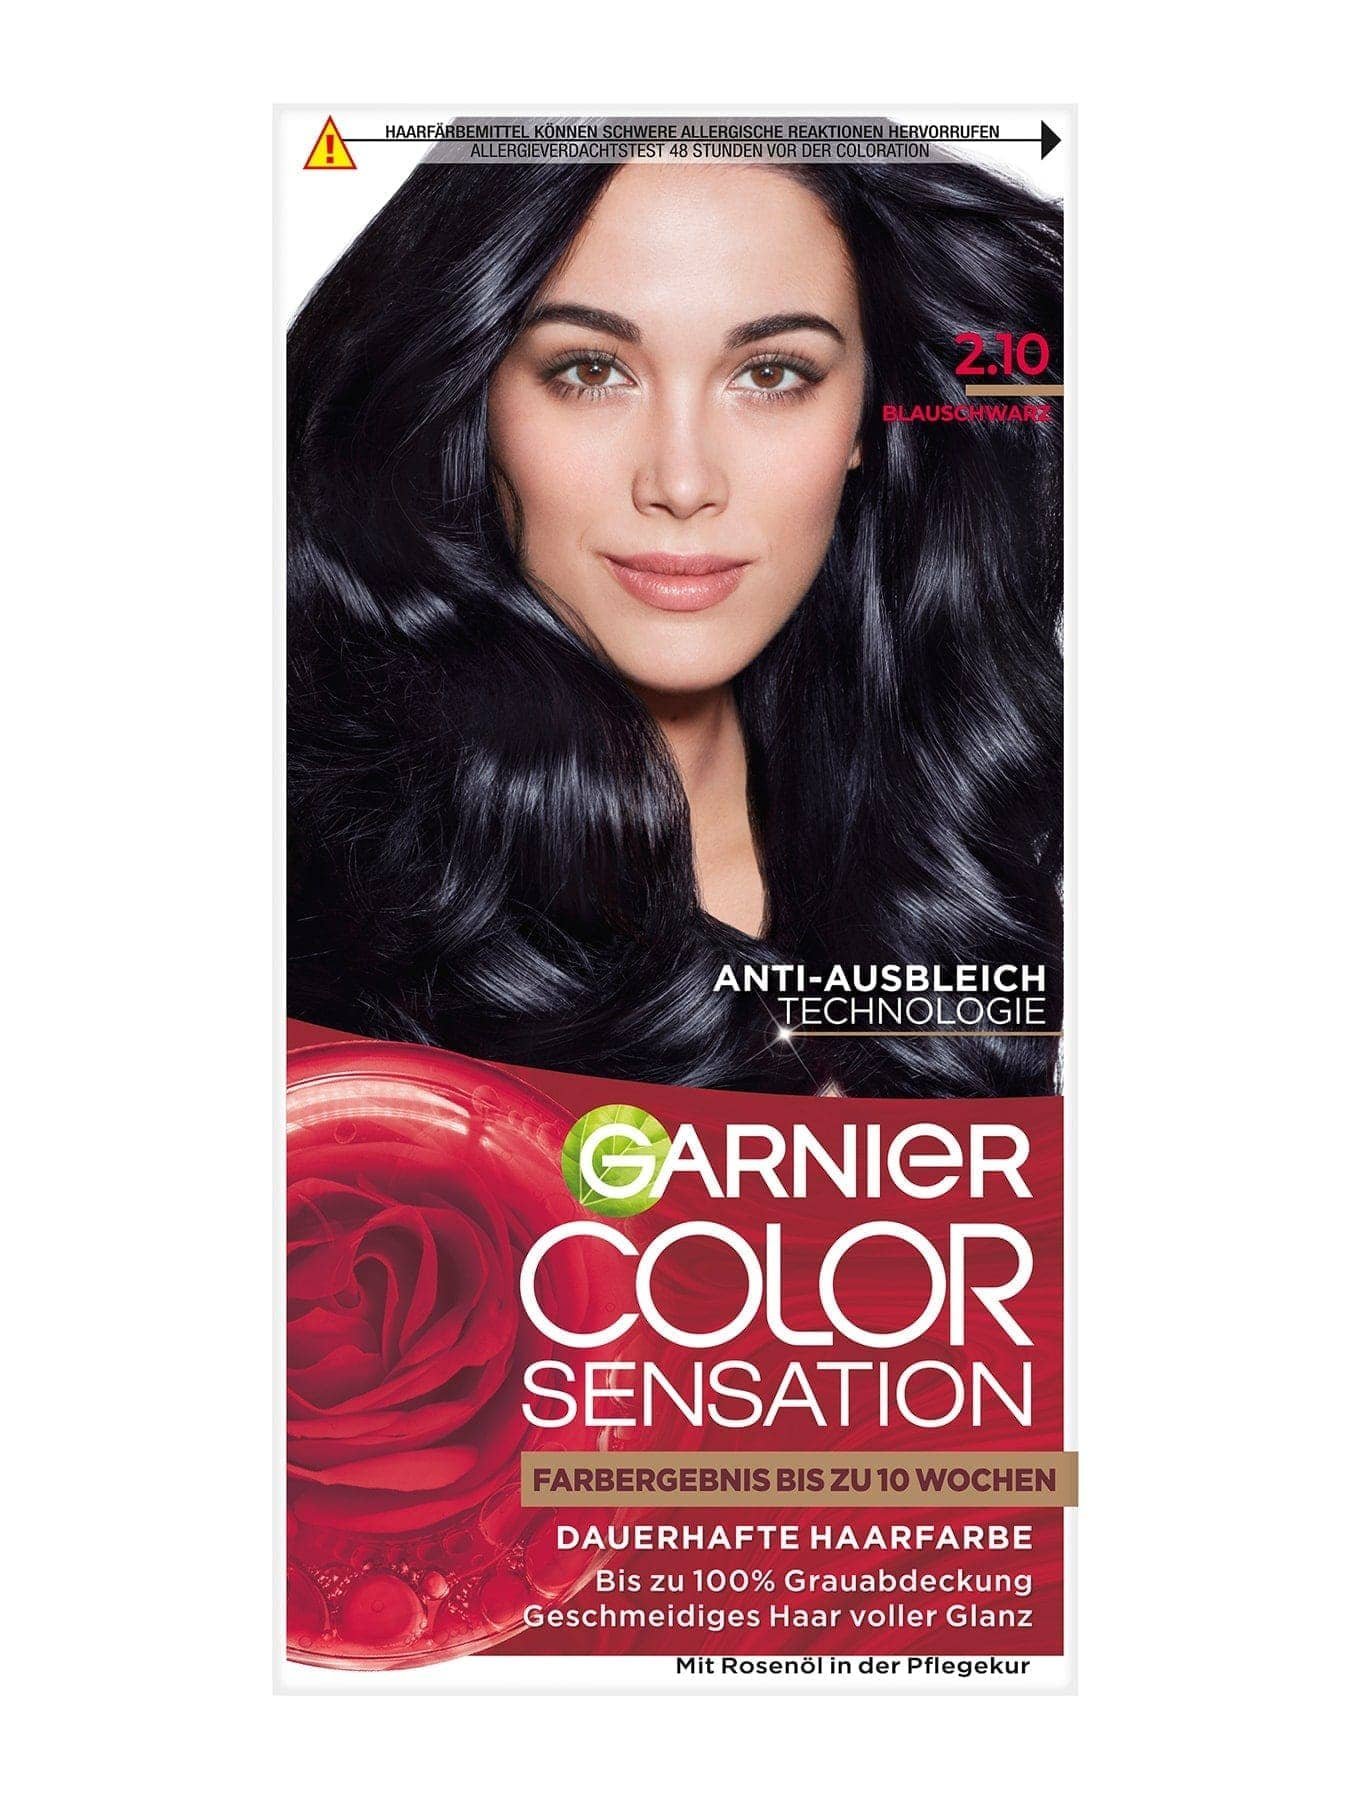 Color Sensation dauerhafte Haarfarbe 2.1 Blauschwarz Produktbild